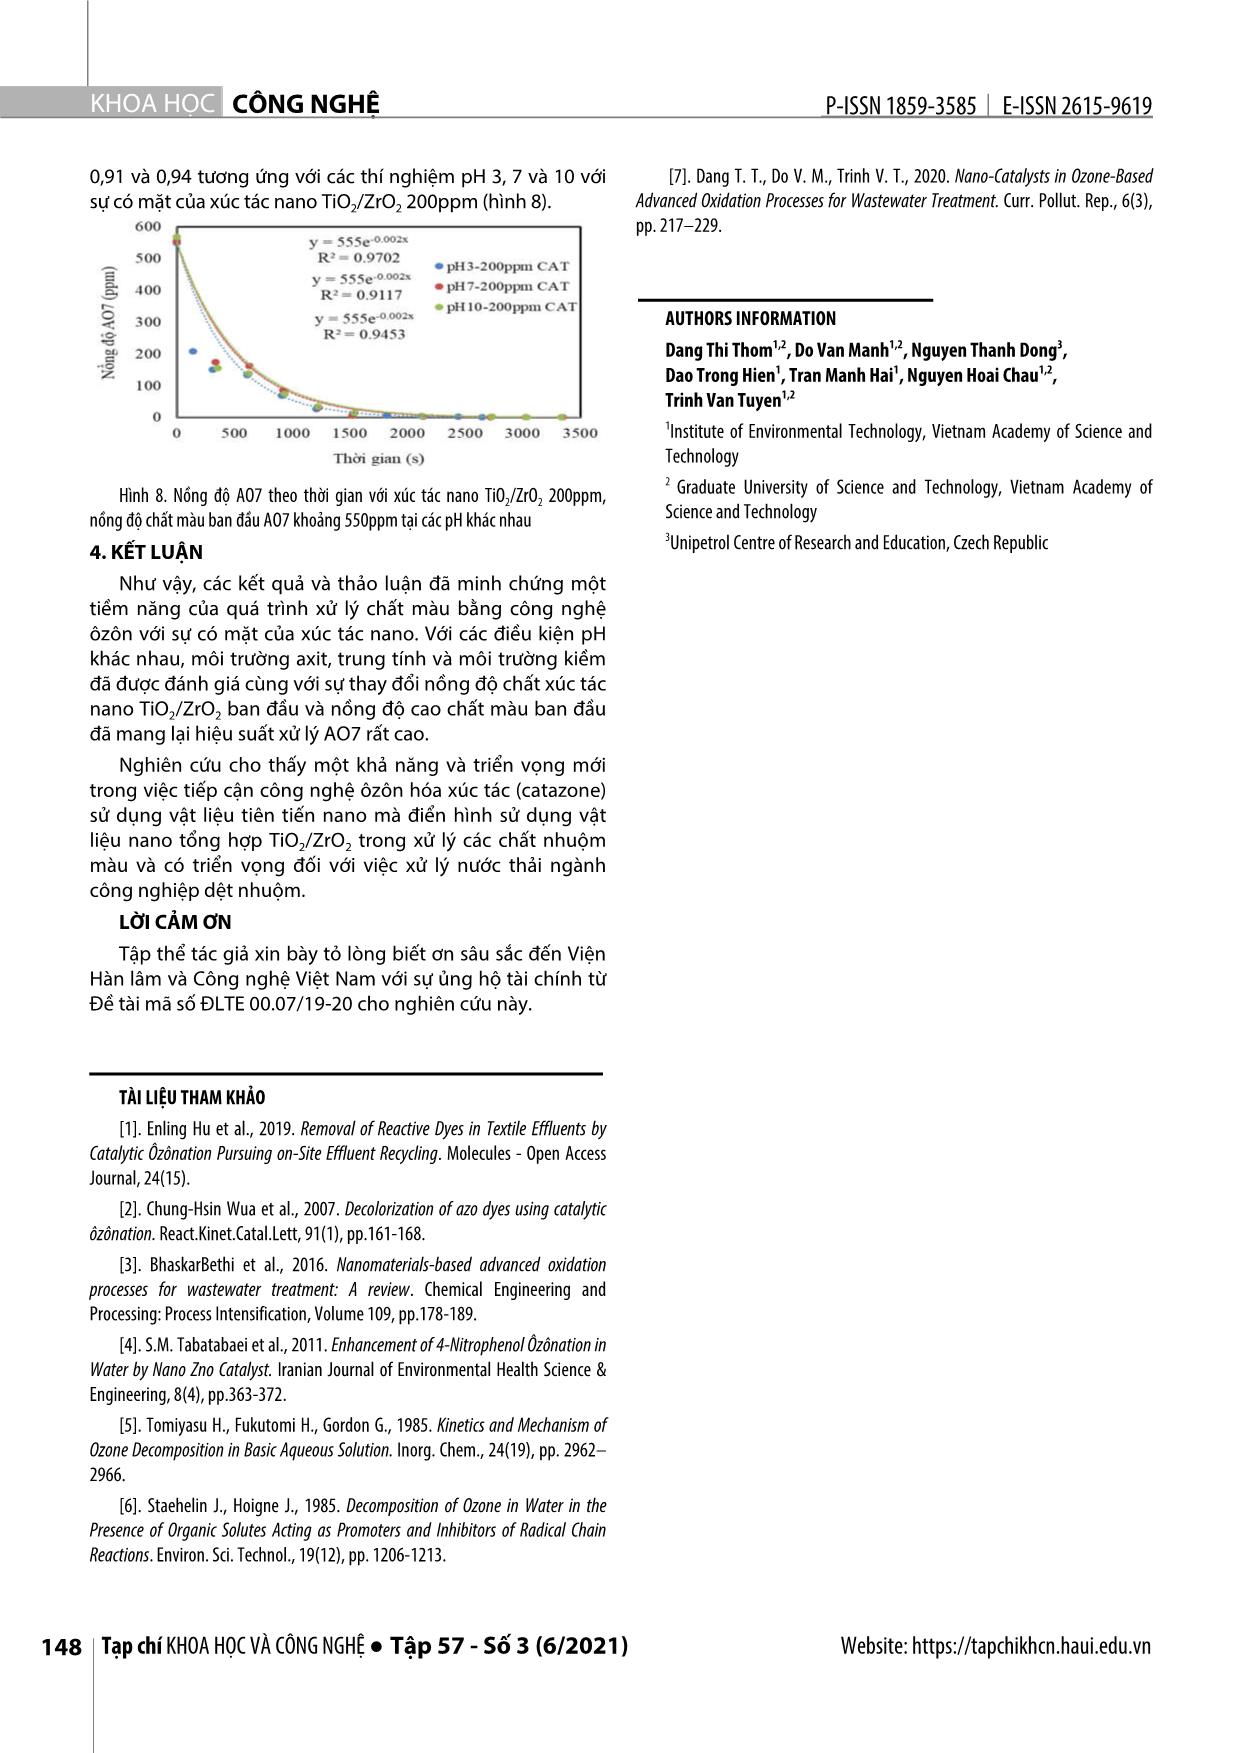 Nghiên cứu sử dụng vật liệu nano tổng hợp TiO₂/ZrO₂ xúc tác quá trình ôxy hóa tiên tiến ôzôn để xử lý axit orange 7 trang 6